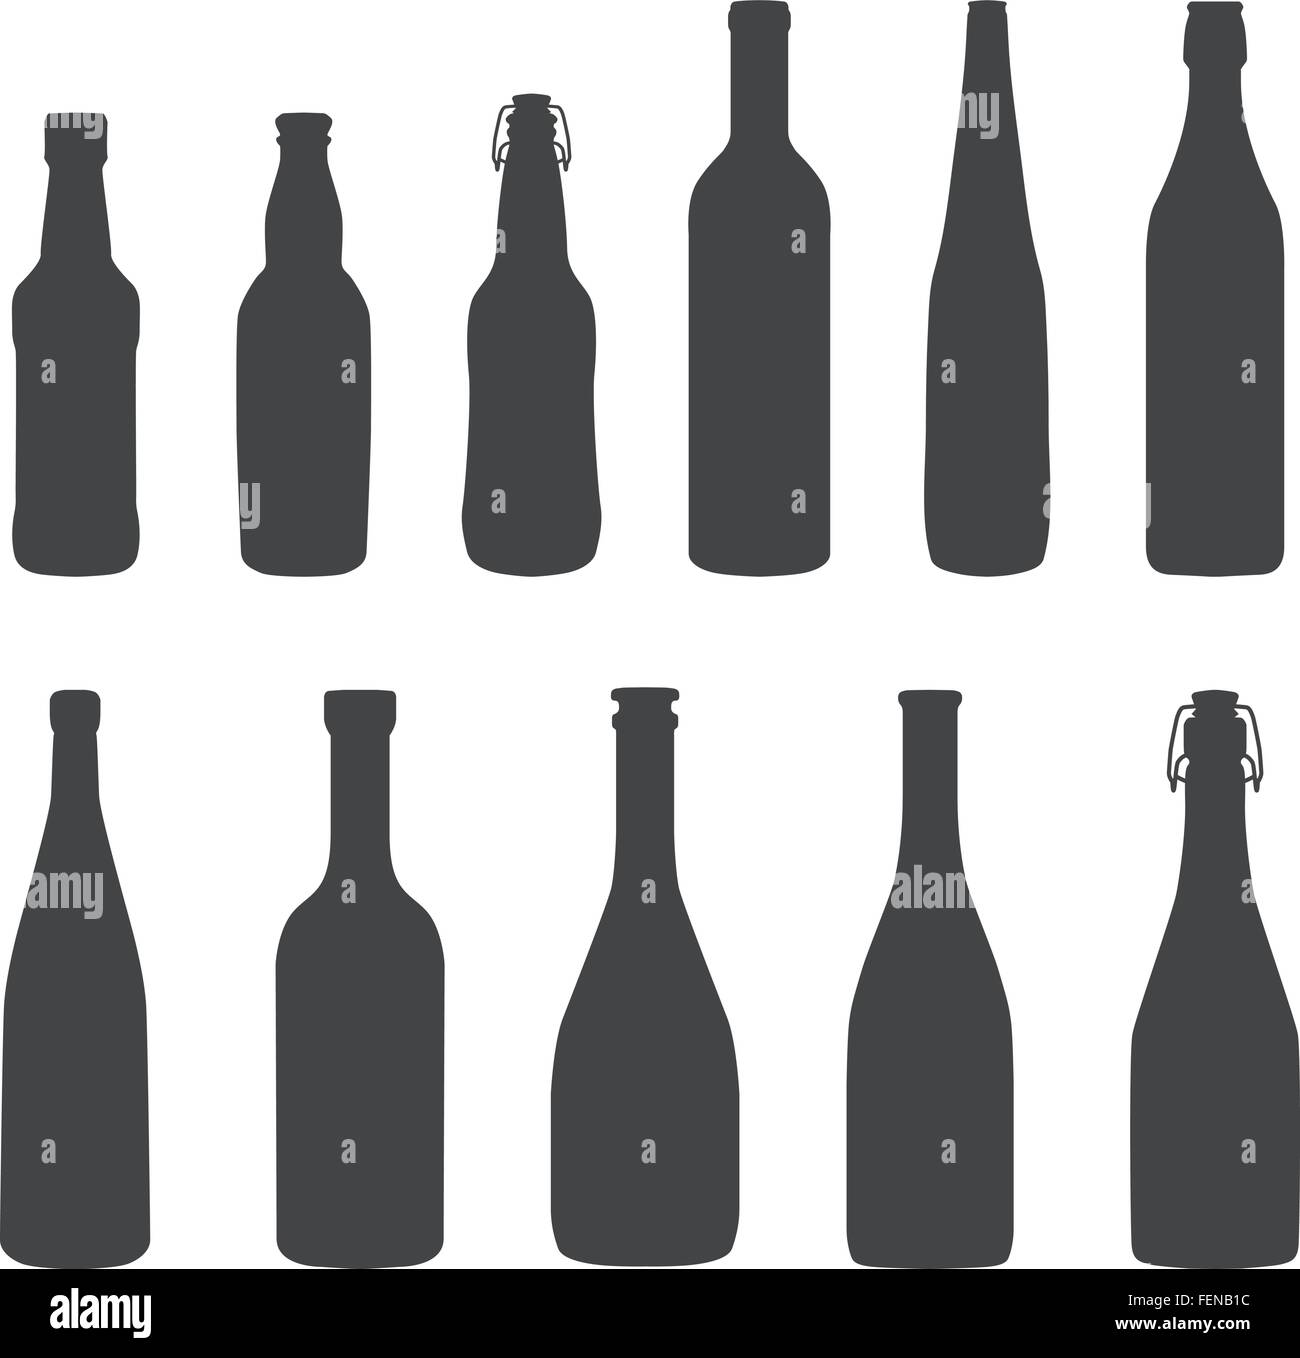 Bottiglie di alcol silhouette monocromatiche impostate Illustrazione Vettoriale